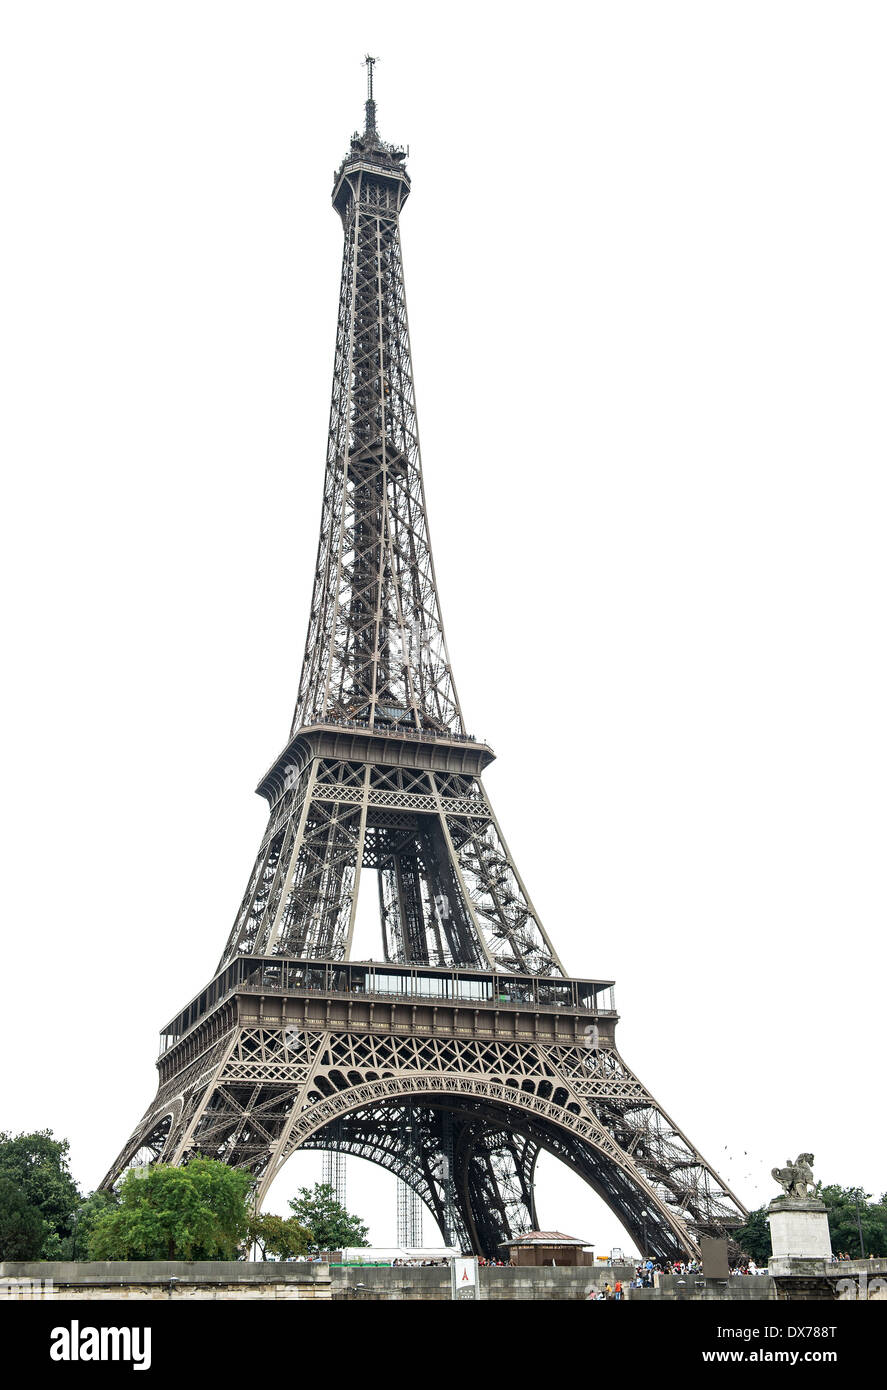 Eiffel Tower (La Tour Eiffel) over white background. Champ de Mars, Paris, Europe Stock Photo